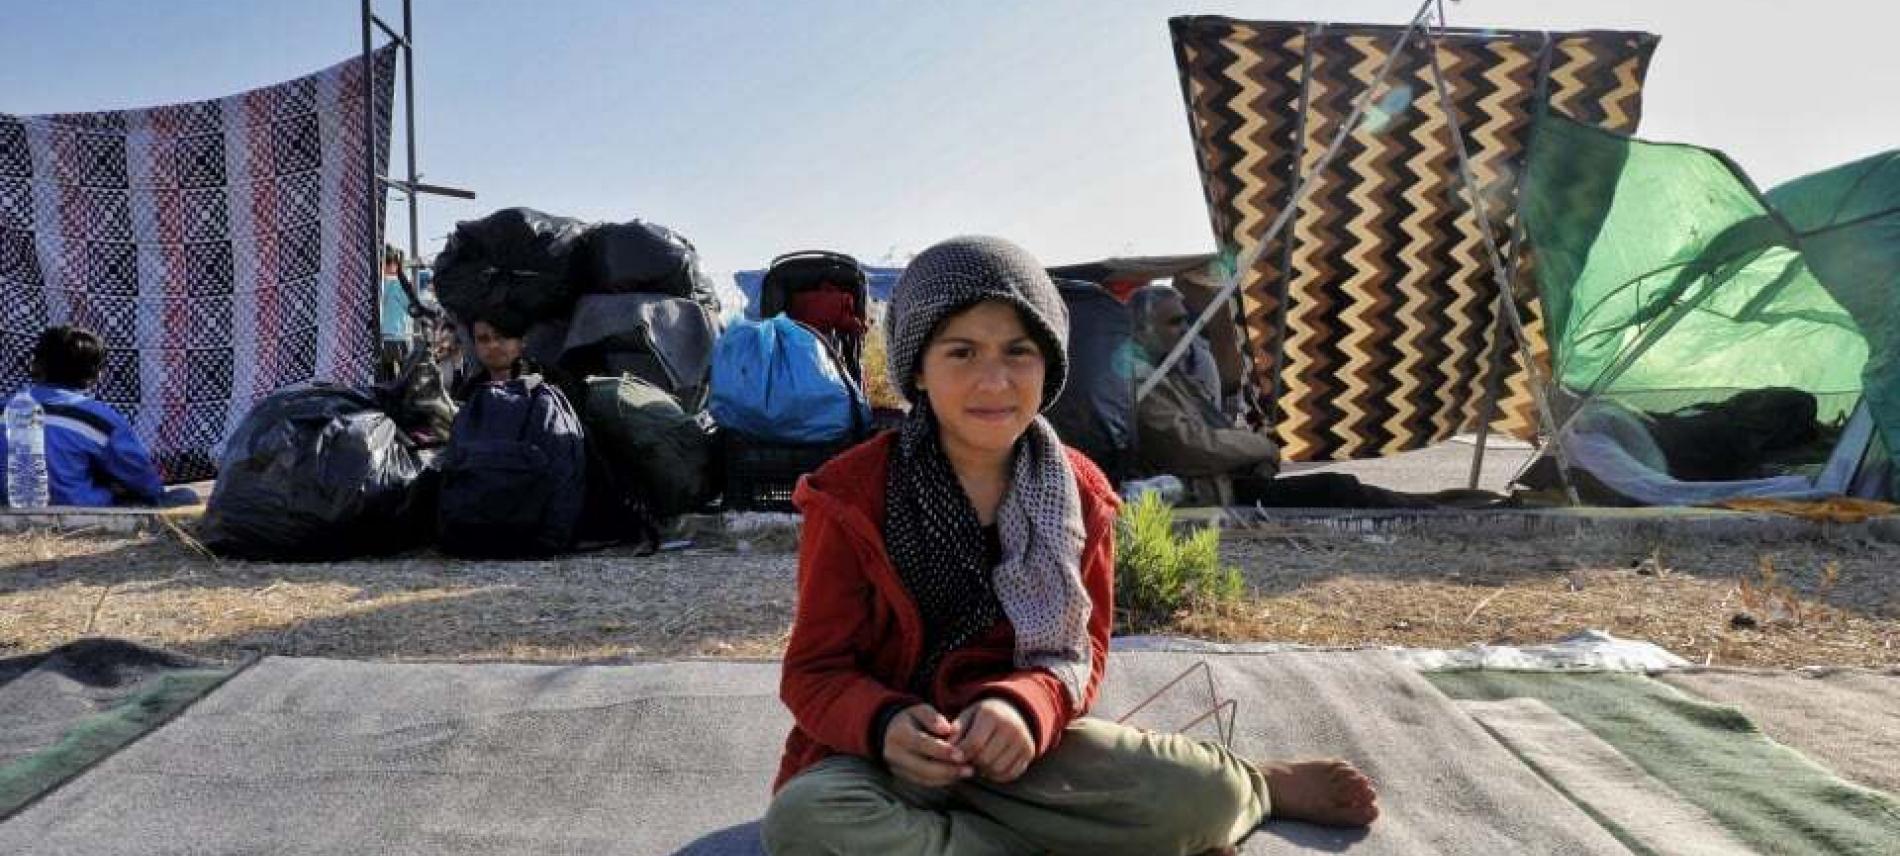 Kind im Flüchtlingscamp auf Lesbos. Foto: Yiannis Yiannakopoulos 